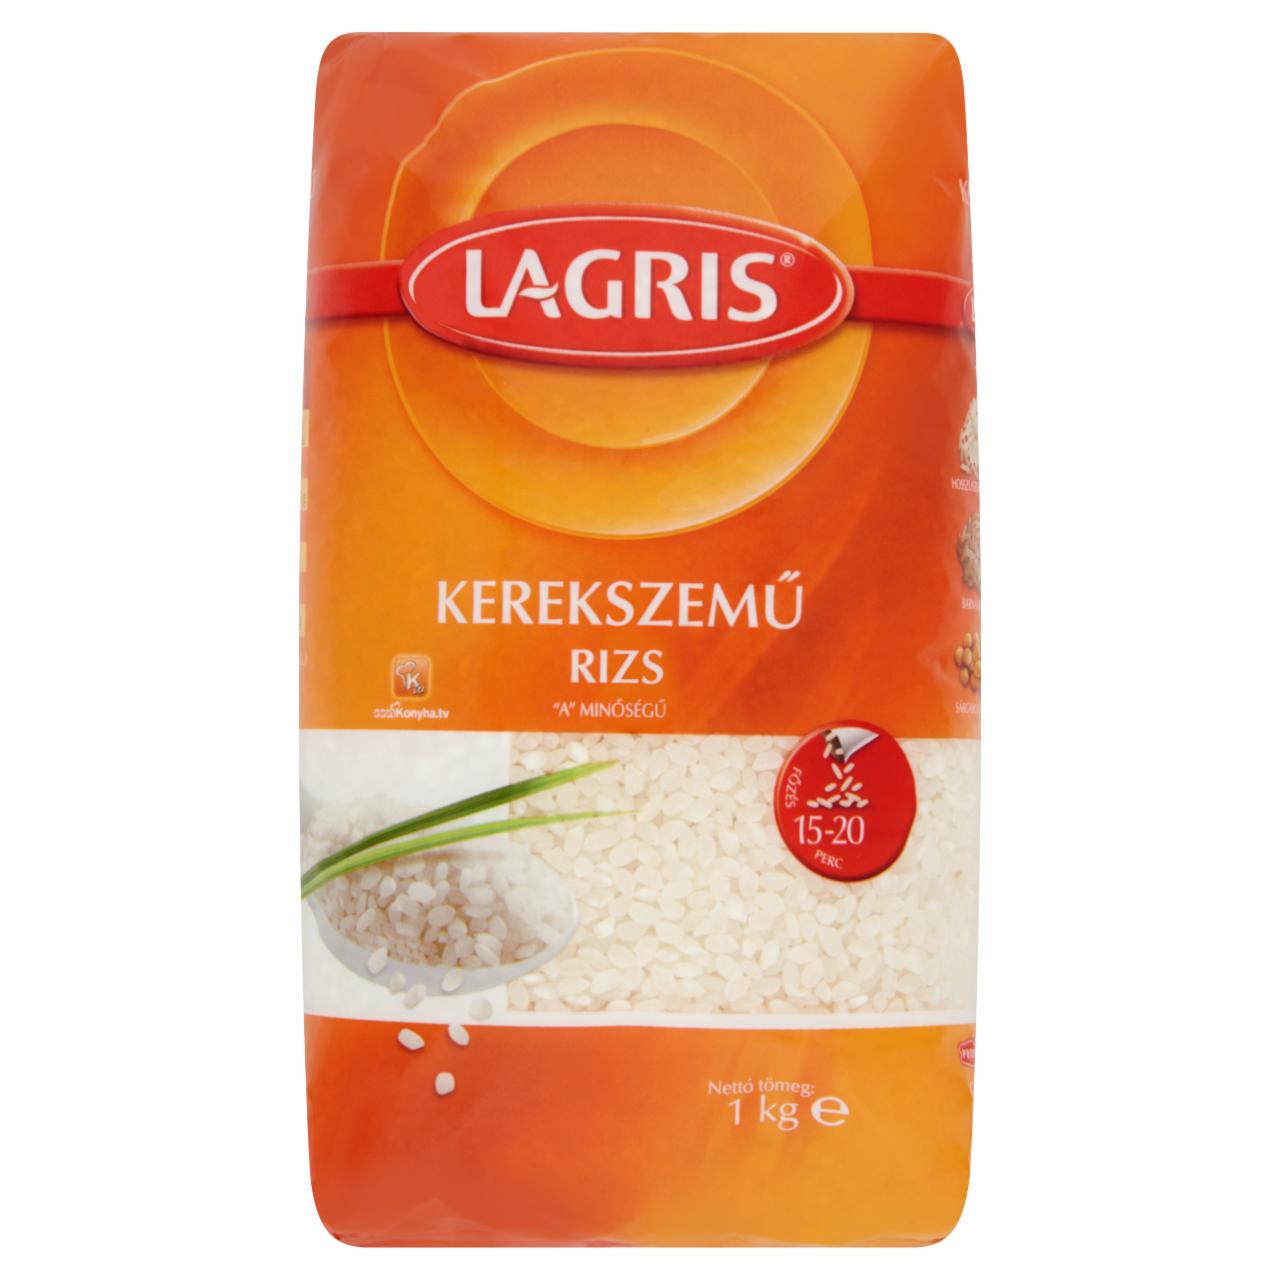 Képek - Lagris kerekszemű rizs 1 kg